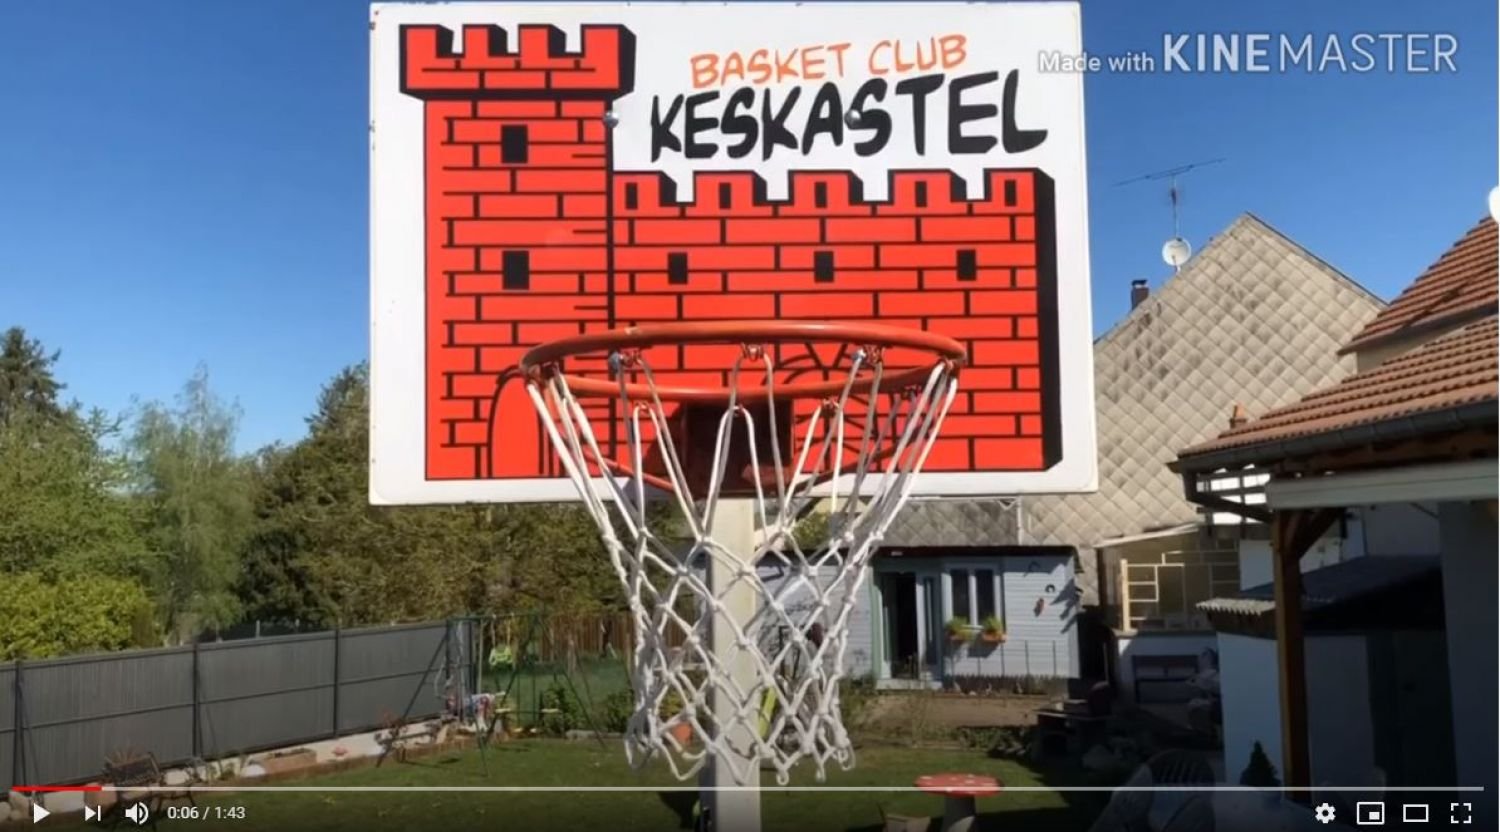 [Vu sur le net] Les basketteurs de Keskastel s'affrontent en vidéo 